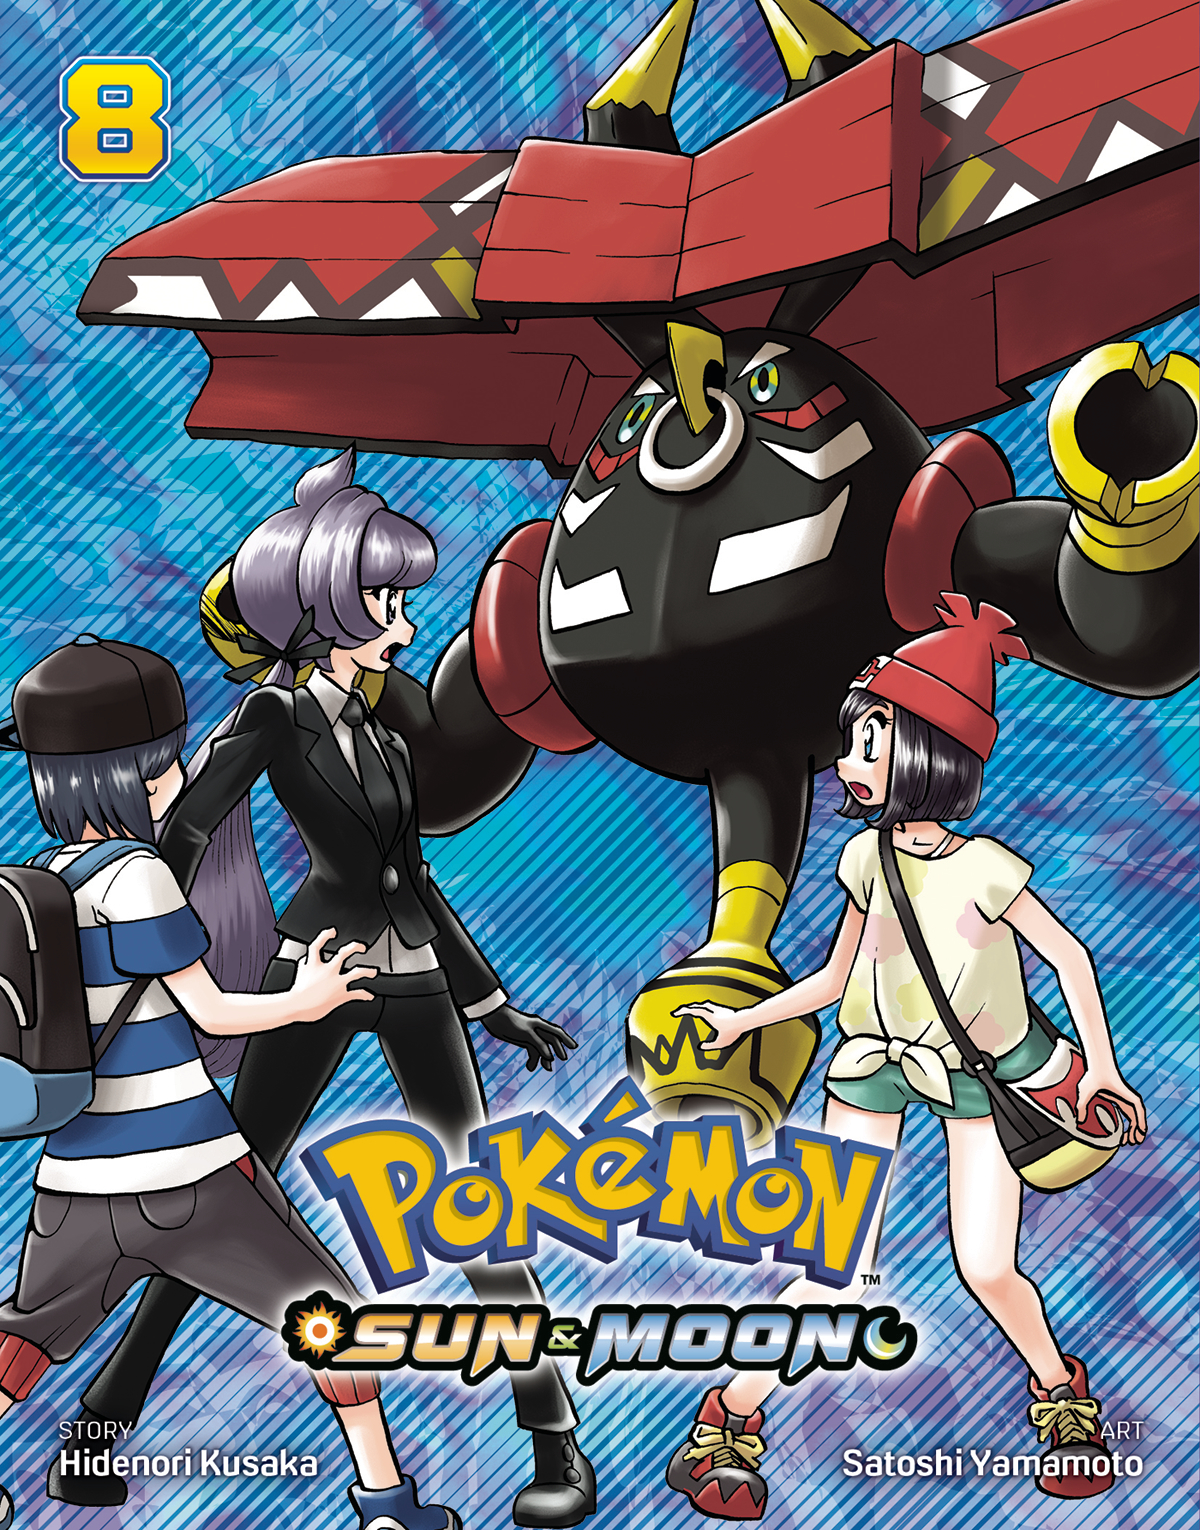 Pokémon Sun & Moon Manga Volume 8